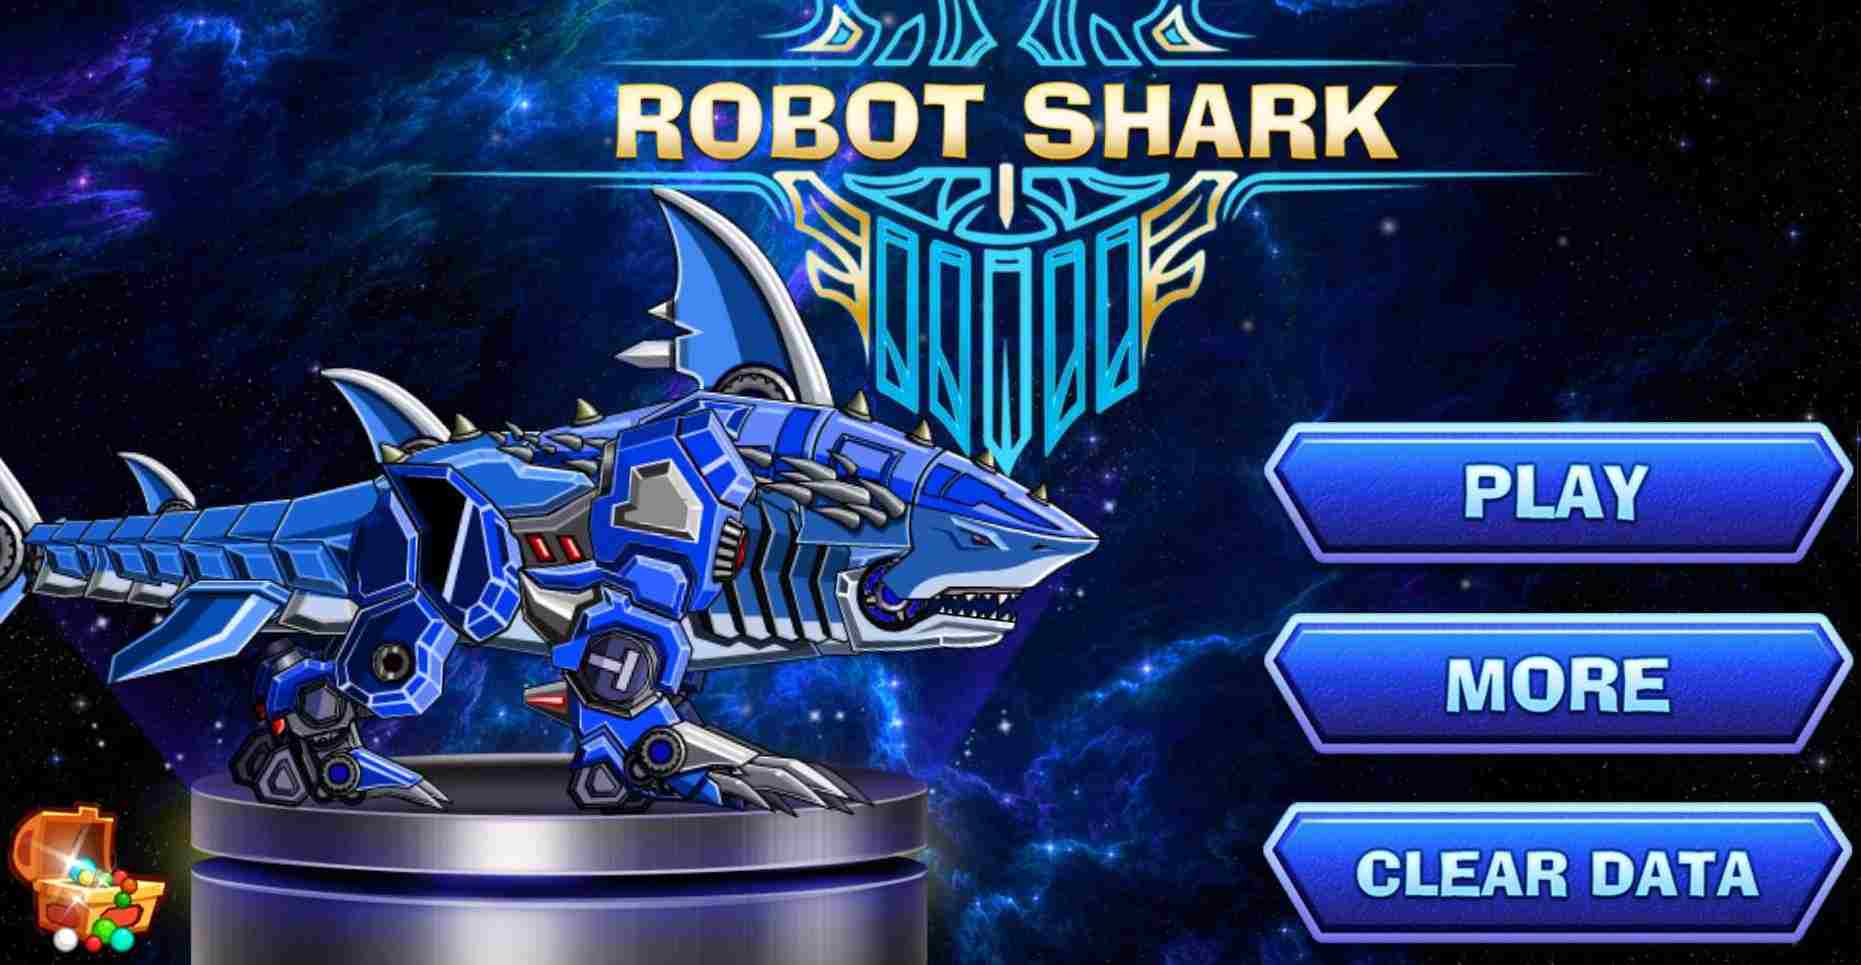 Hack Robot Shark MOD (Menu Pro, Tiền Full, Kim Cương, Điểm Nâng Cấp) APK 3.7.539.202345315